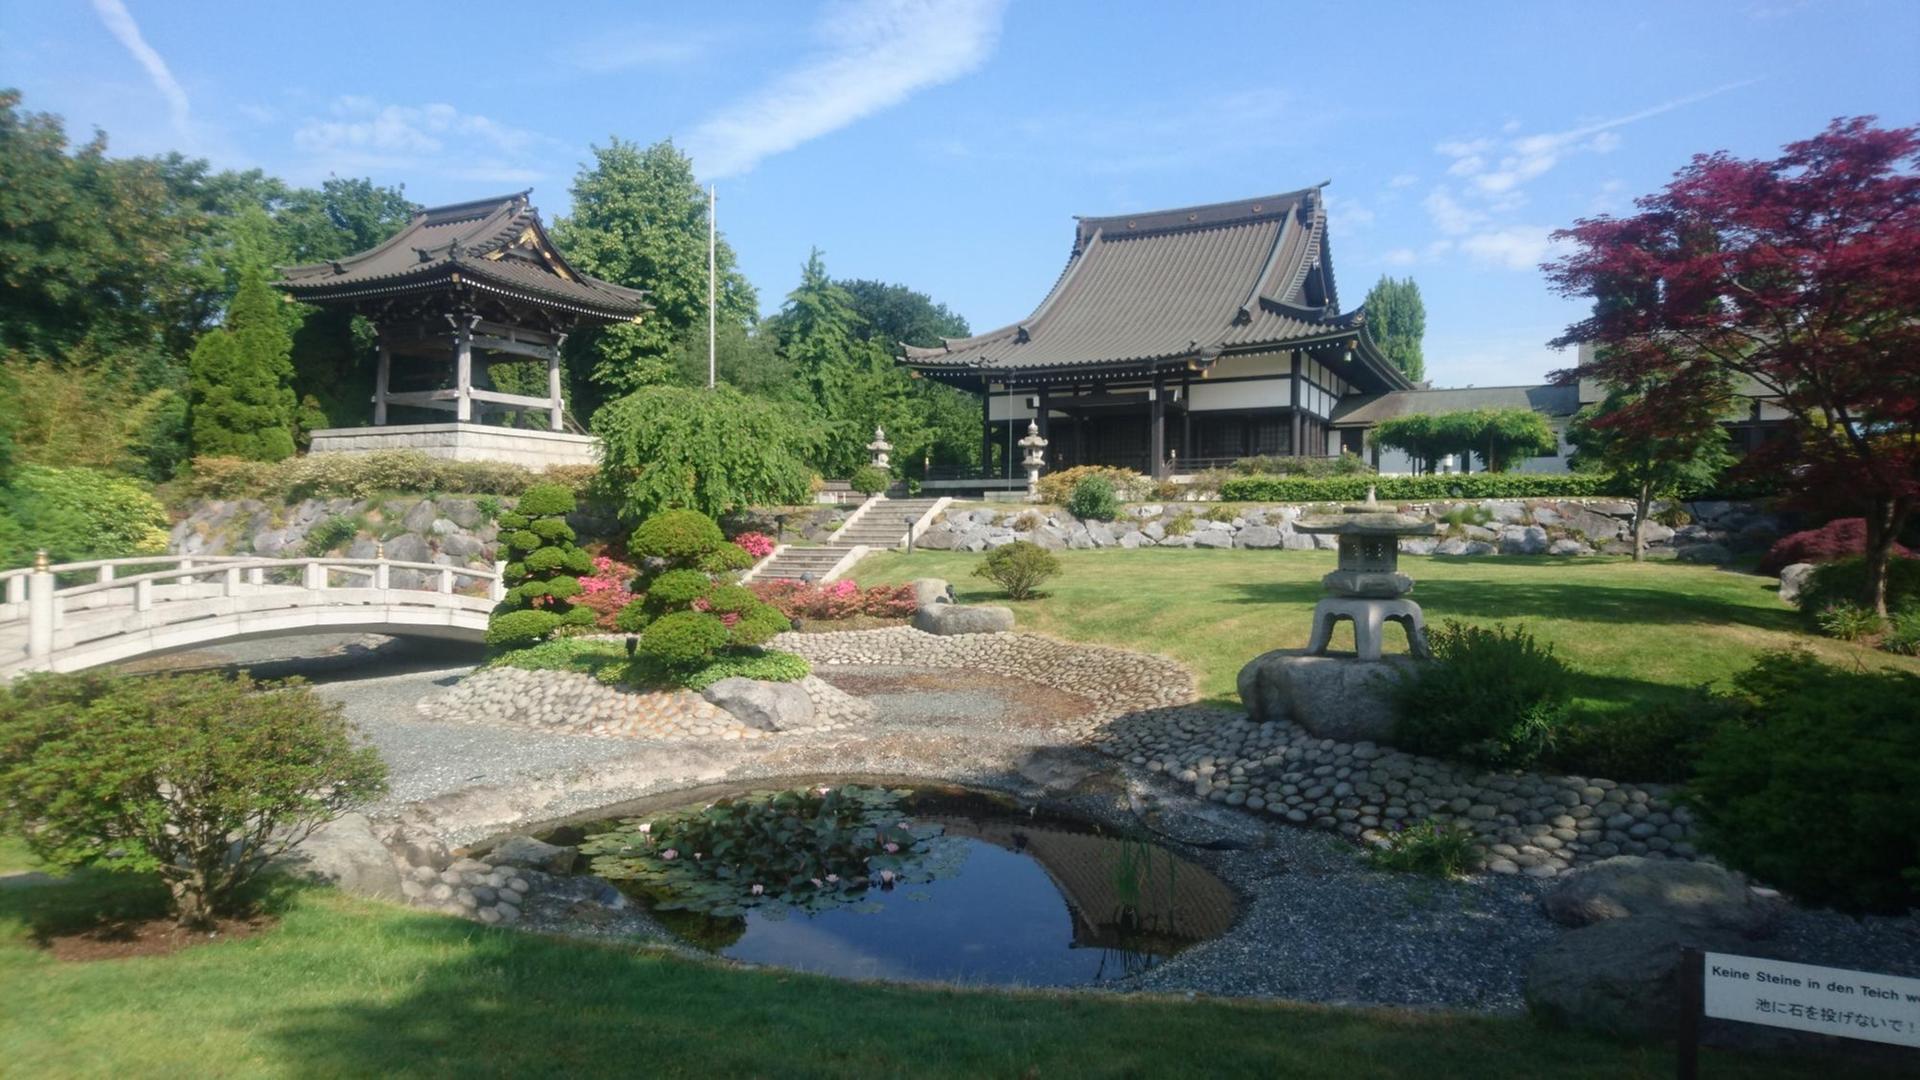 Japanischer Garten des EKO-Hauses in Düsseldorf (einem japanischen Kulturverein)